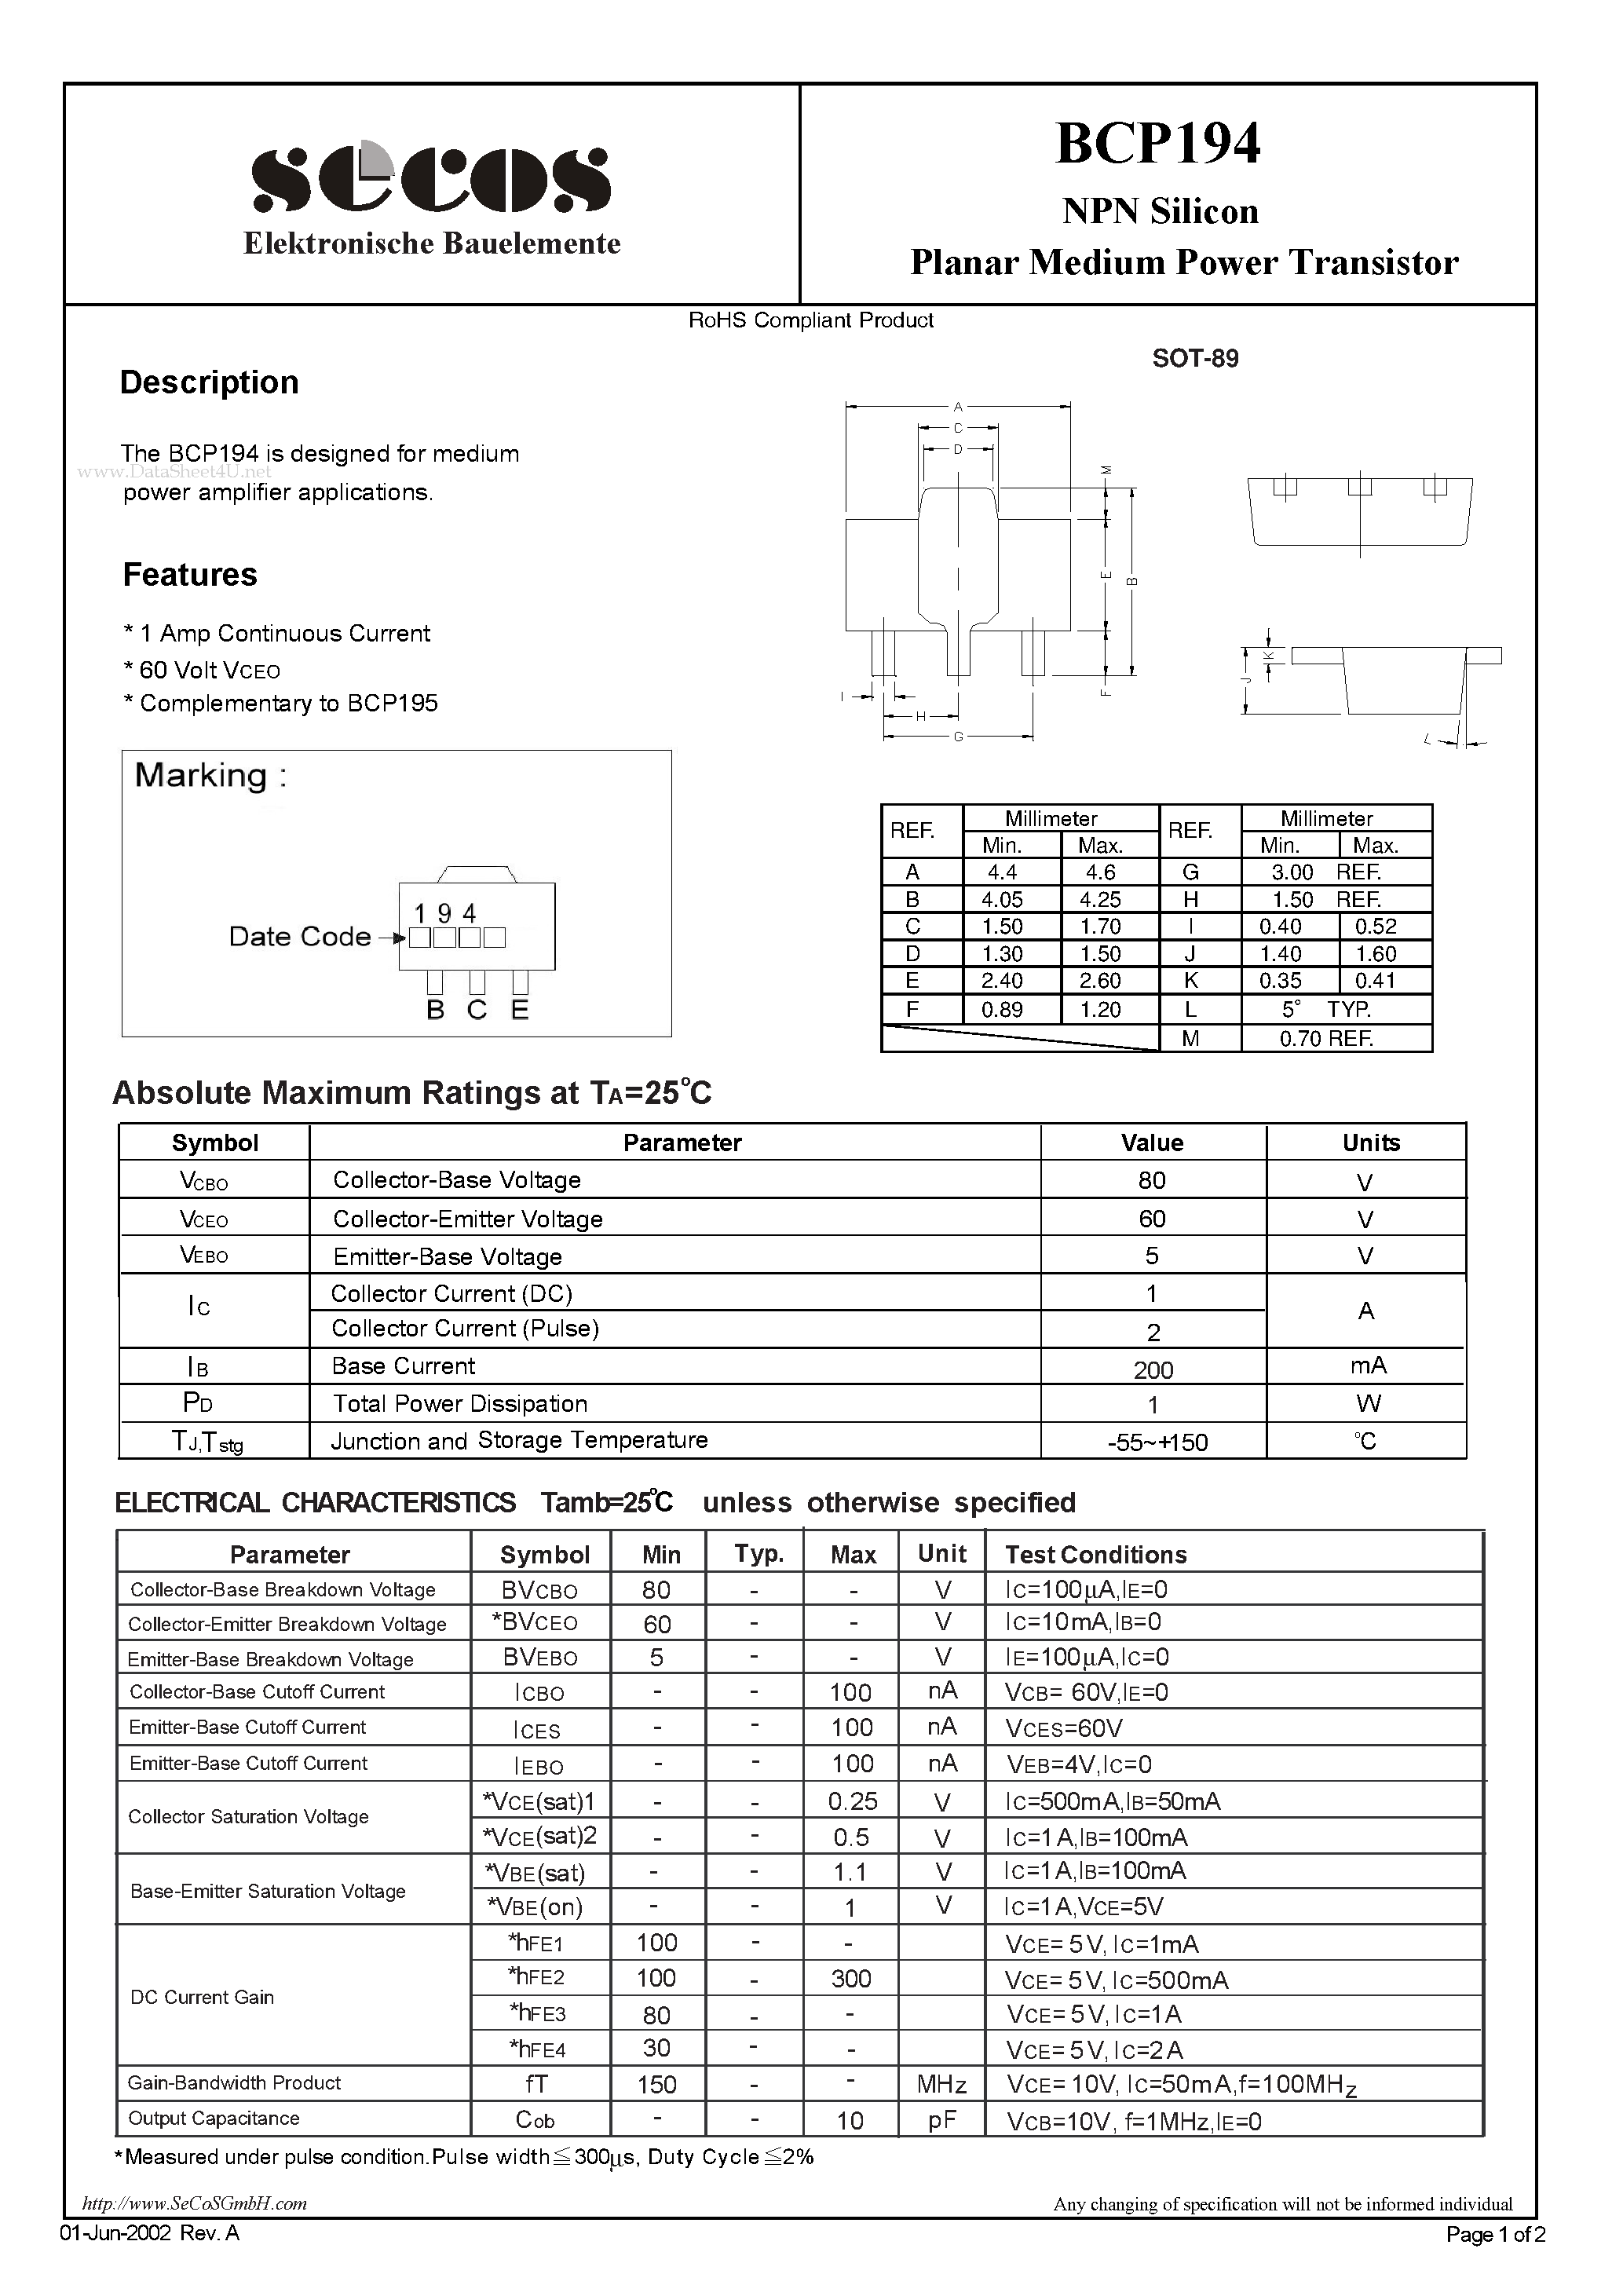 Даташит BCP194 - Planar Medium Power Transistor страница 1